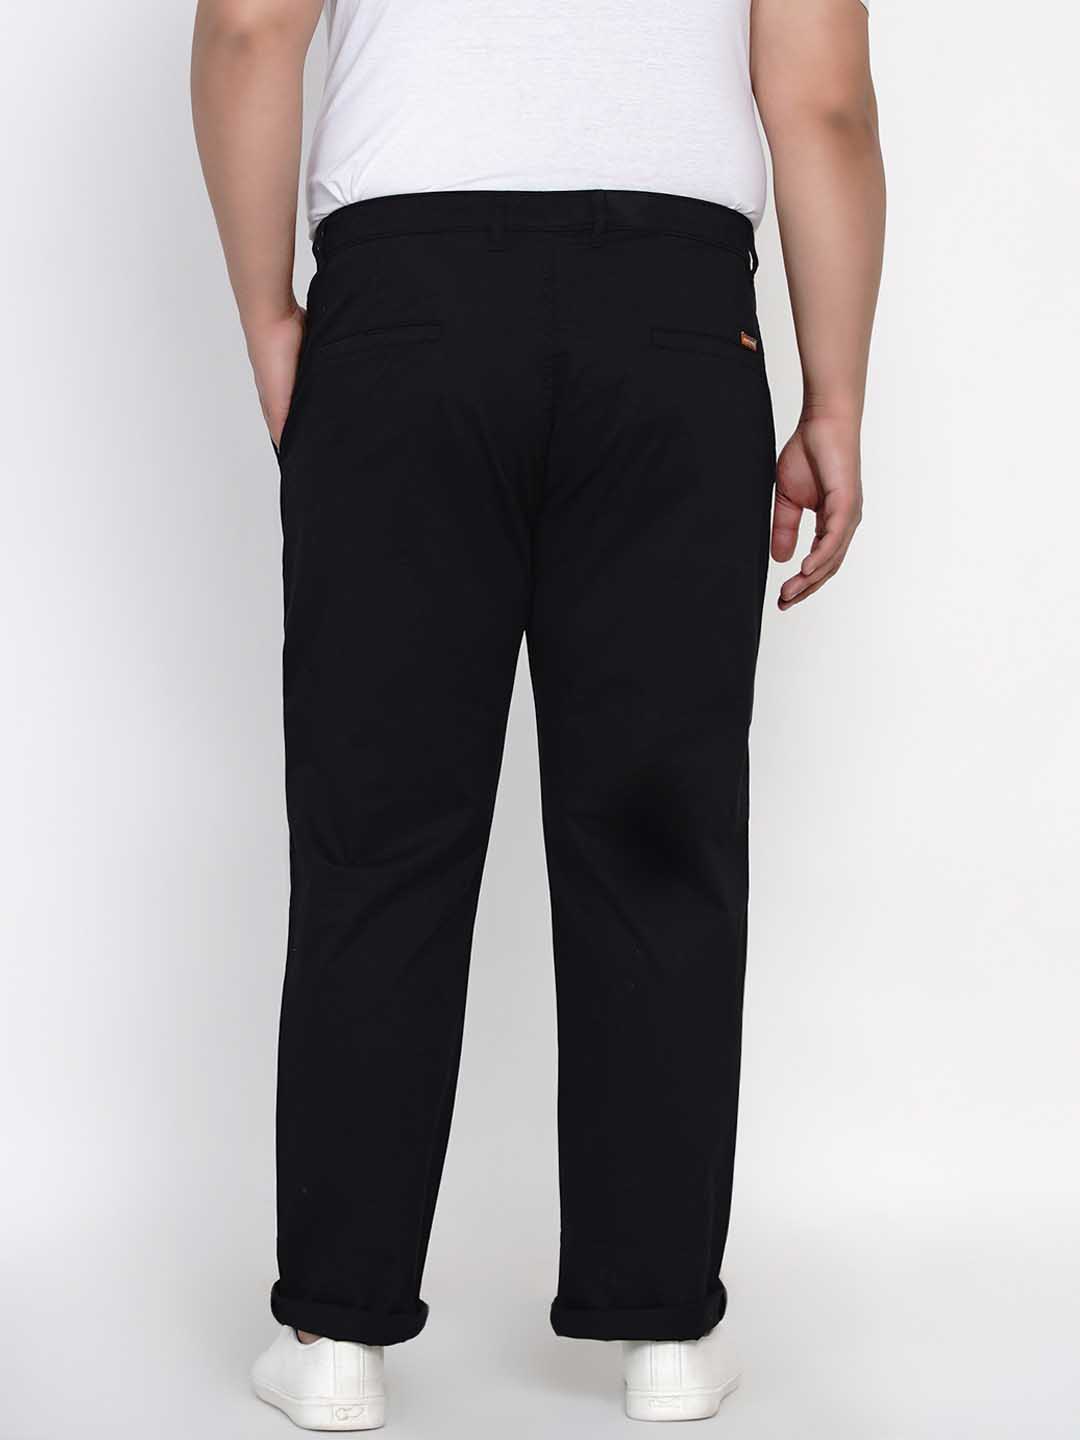 bottomwear/trousers/JPTR2195D/jptr2195d-4.jpg